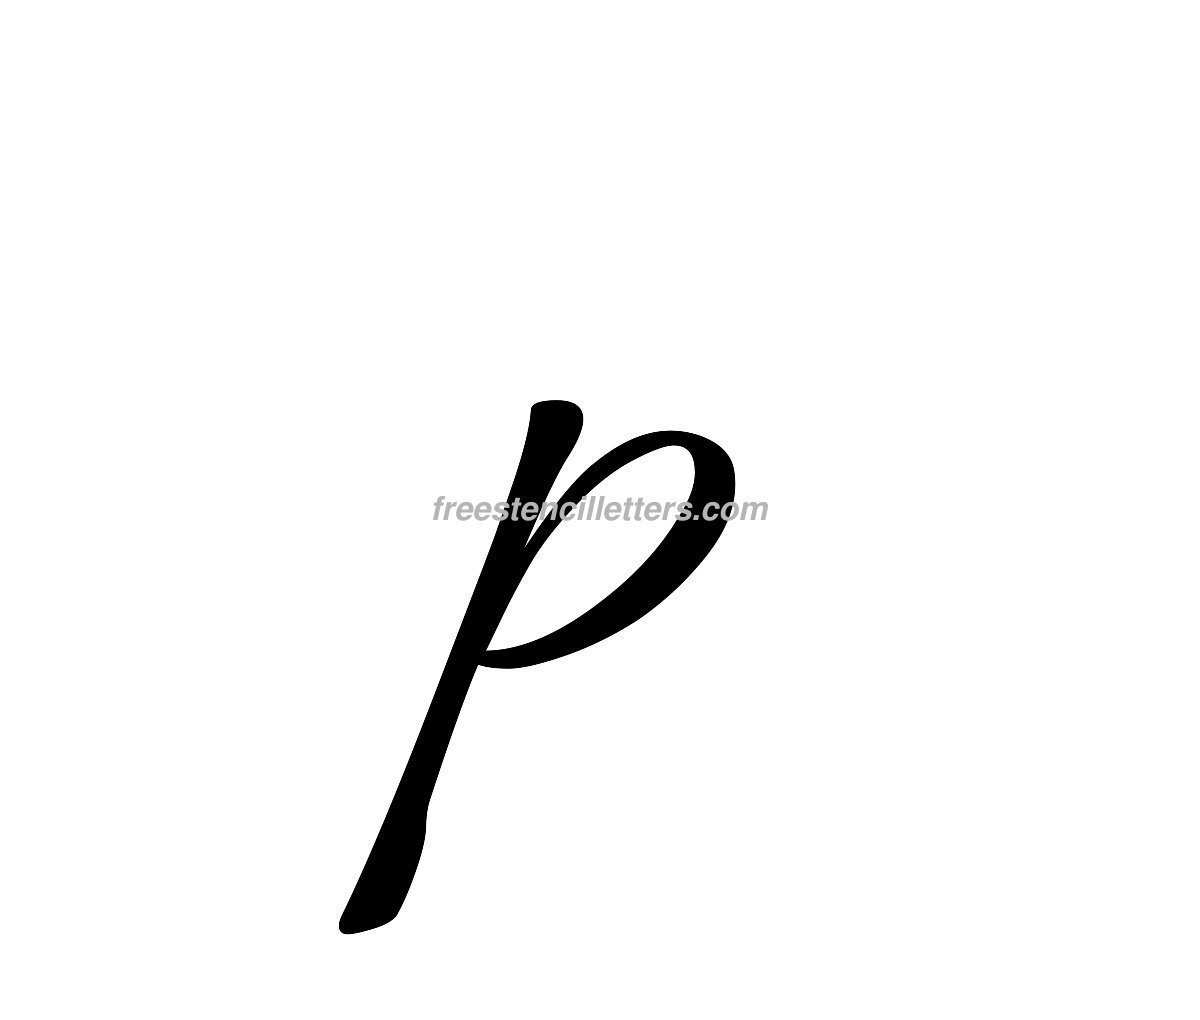 Print Small P Letter Stencil